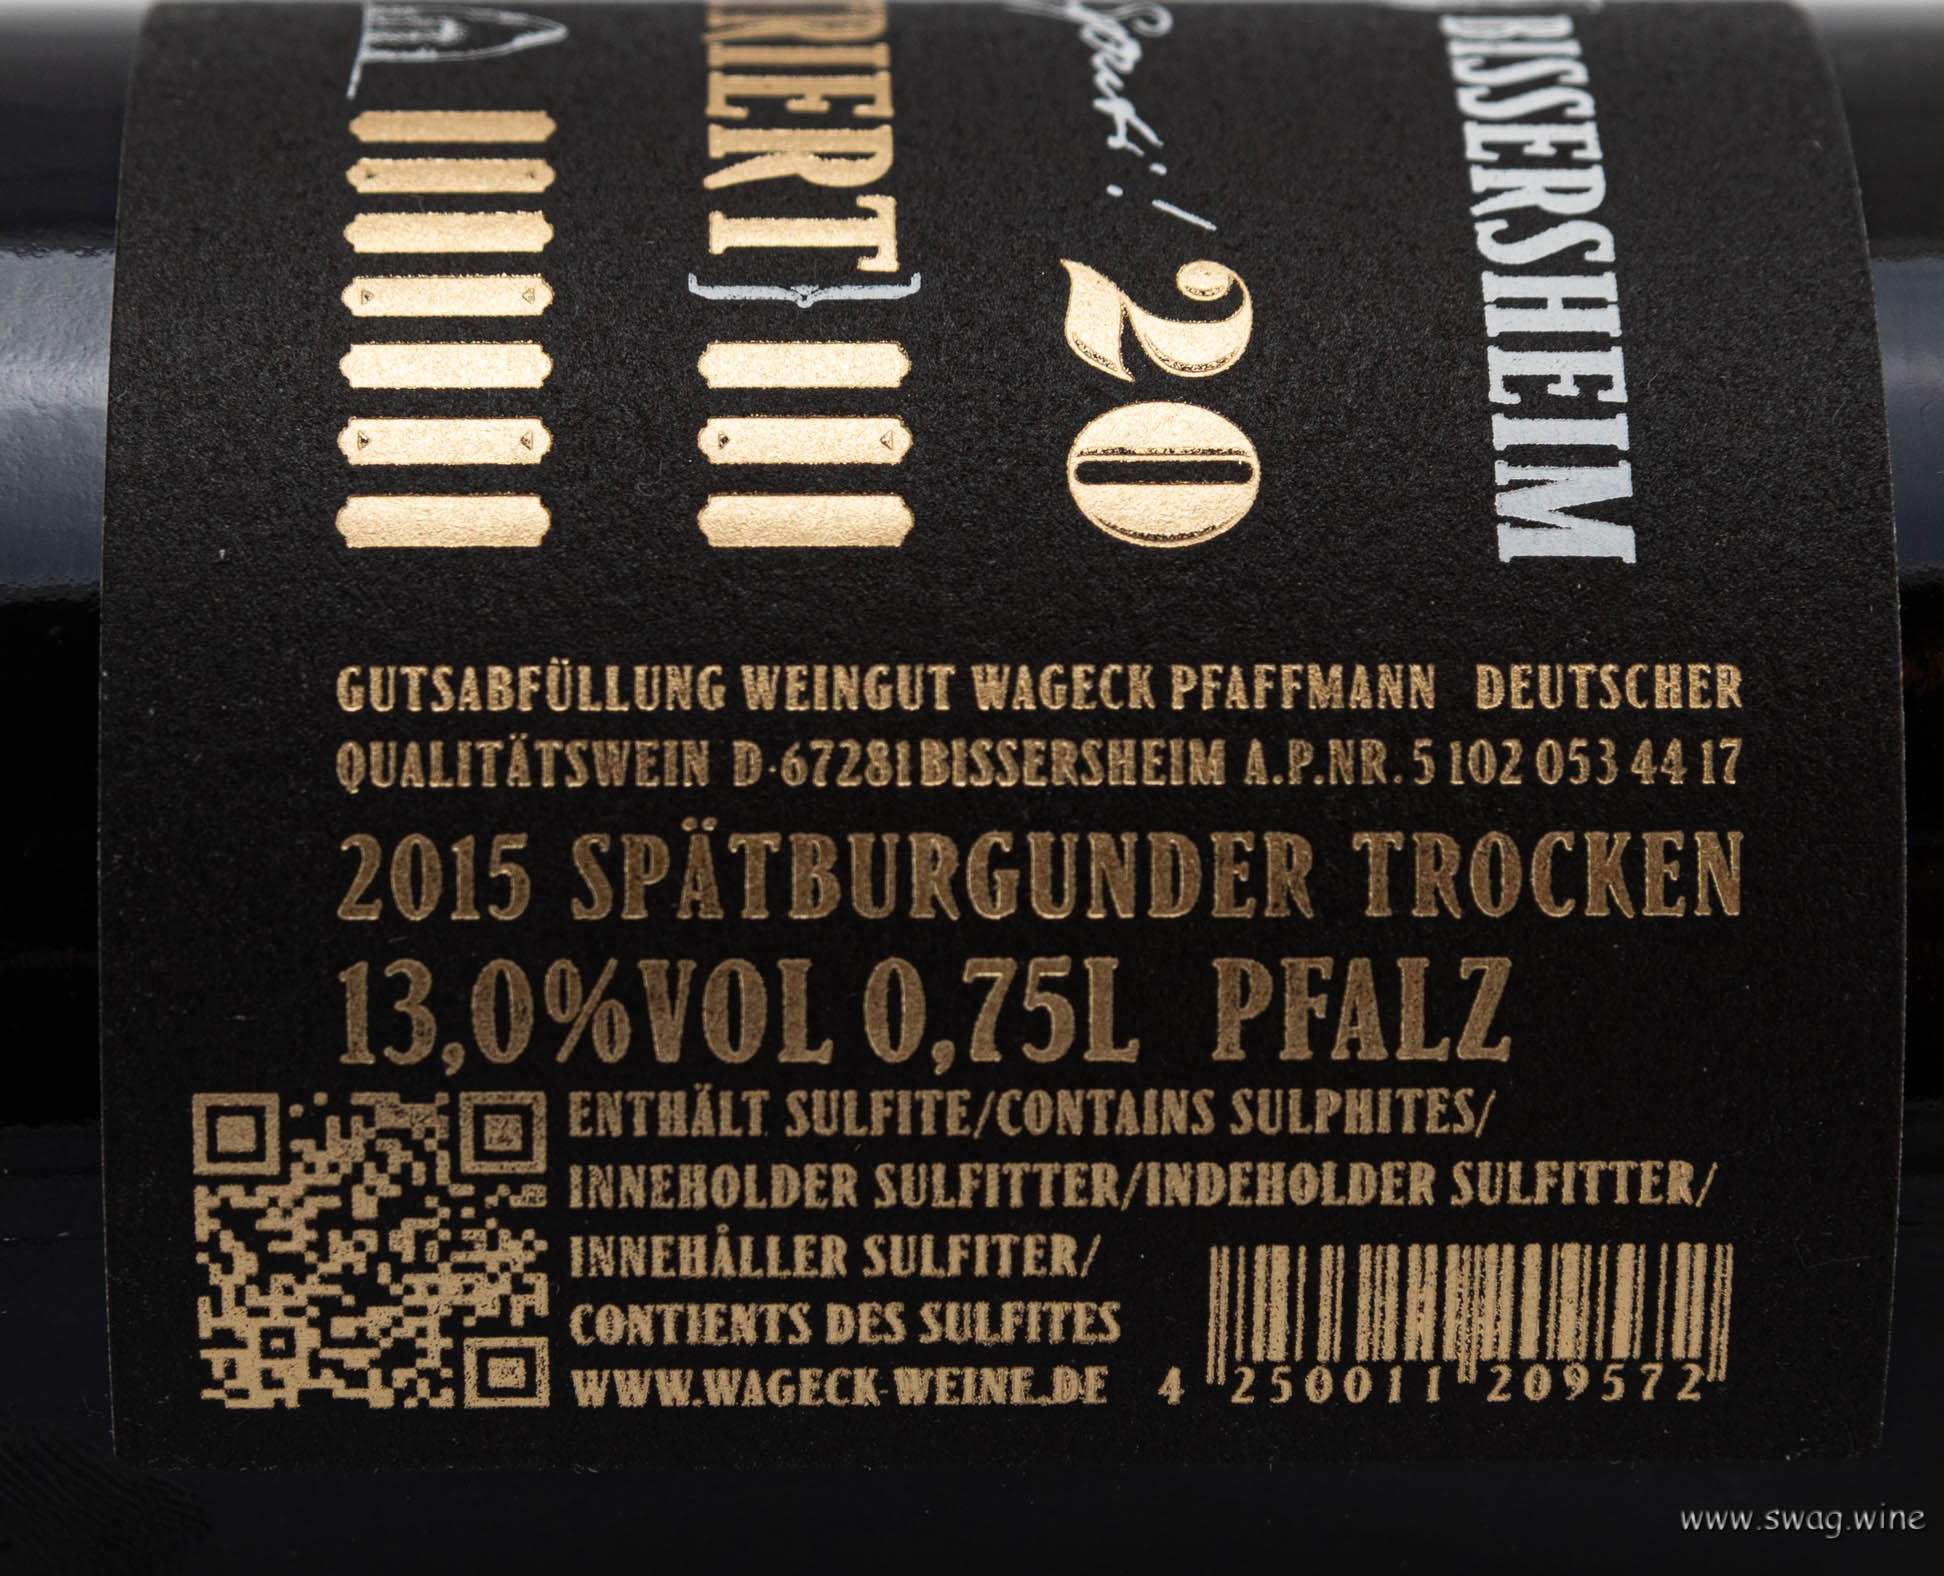 Spätburgunder Pinot Noir Gaisberg Wageck Weine Swagwine Pfalz